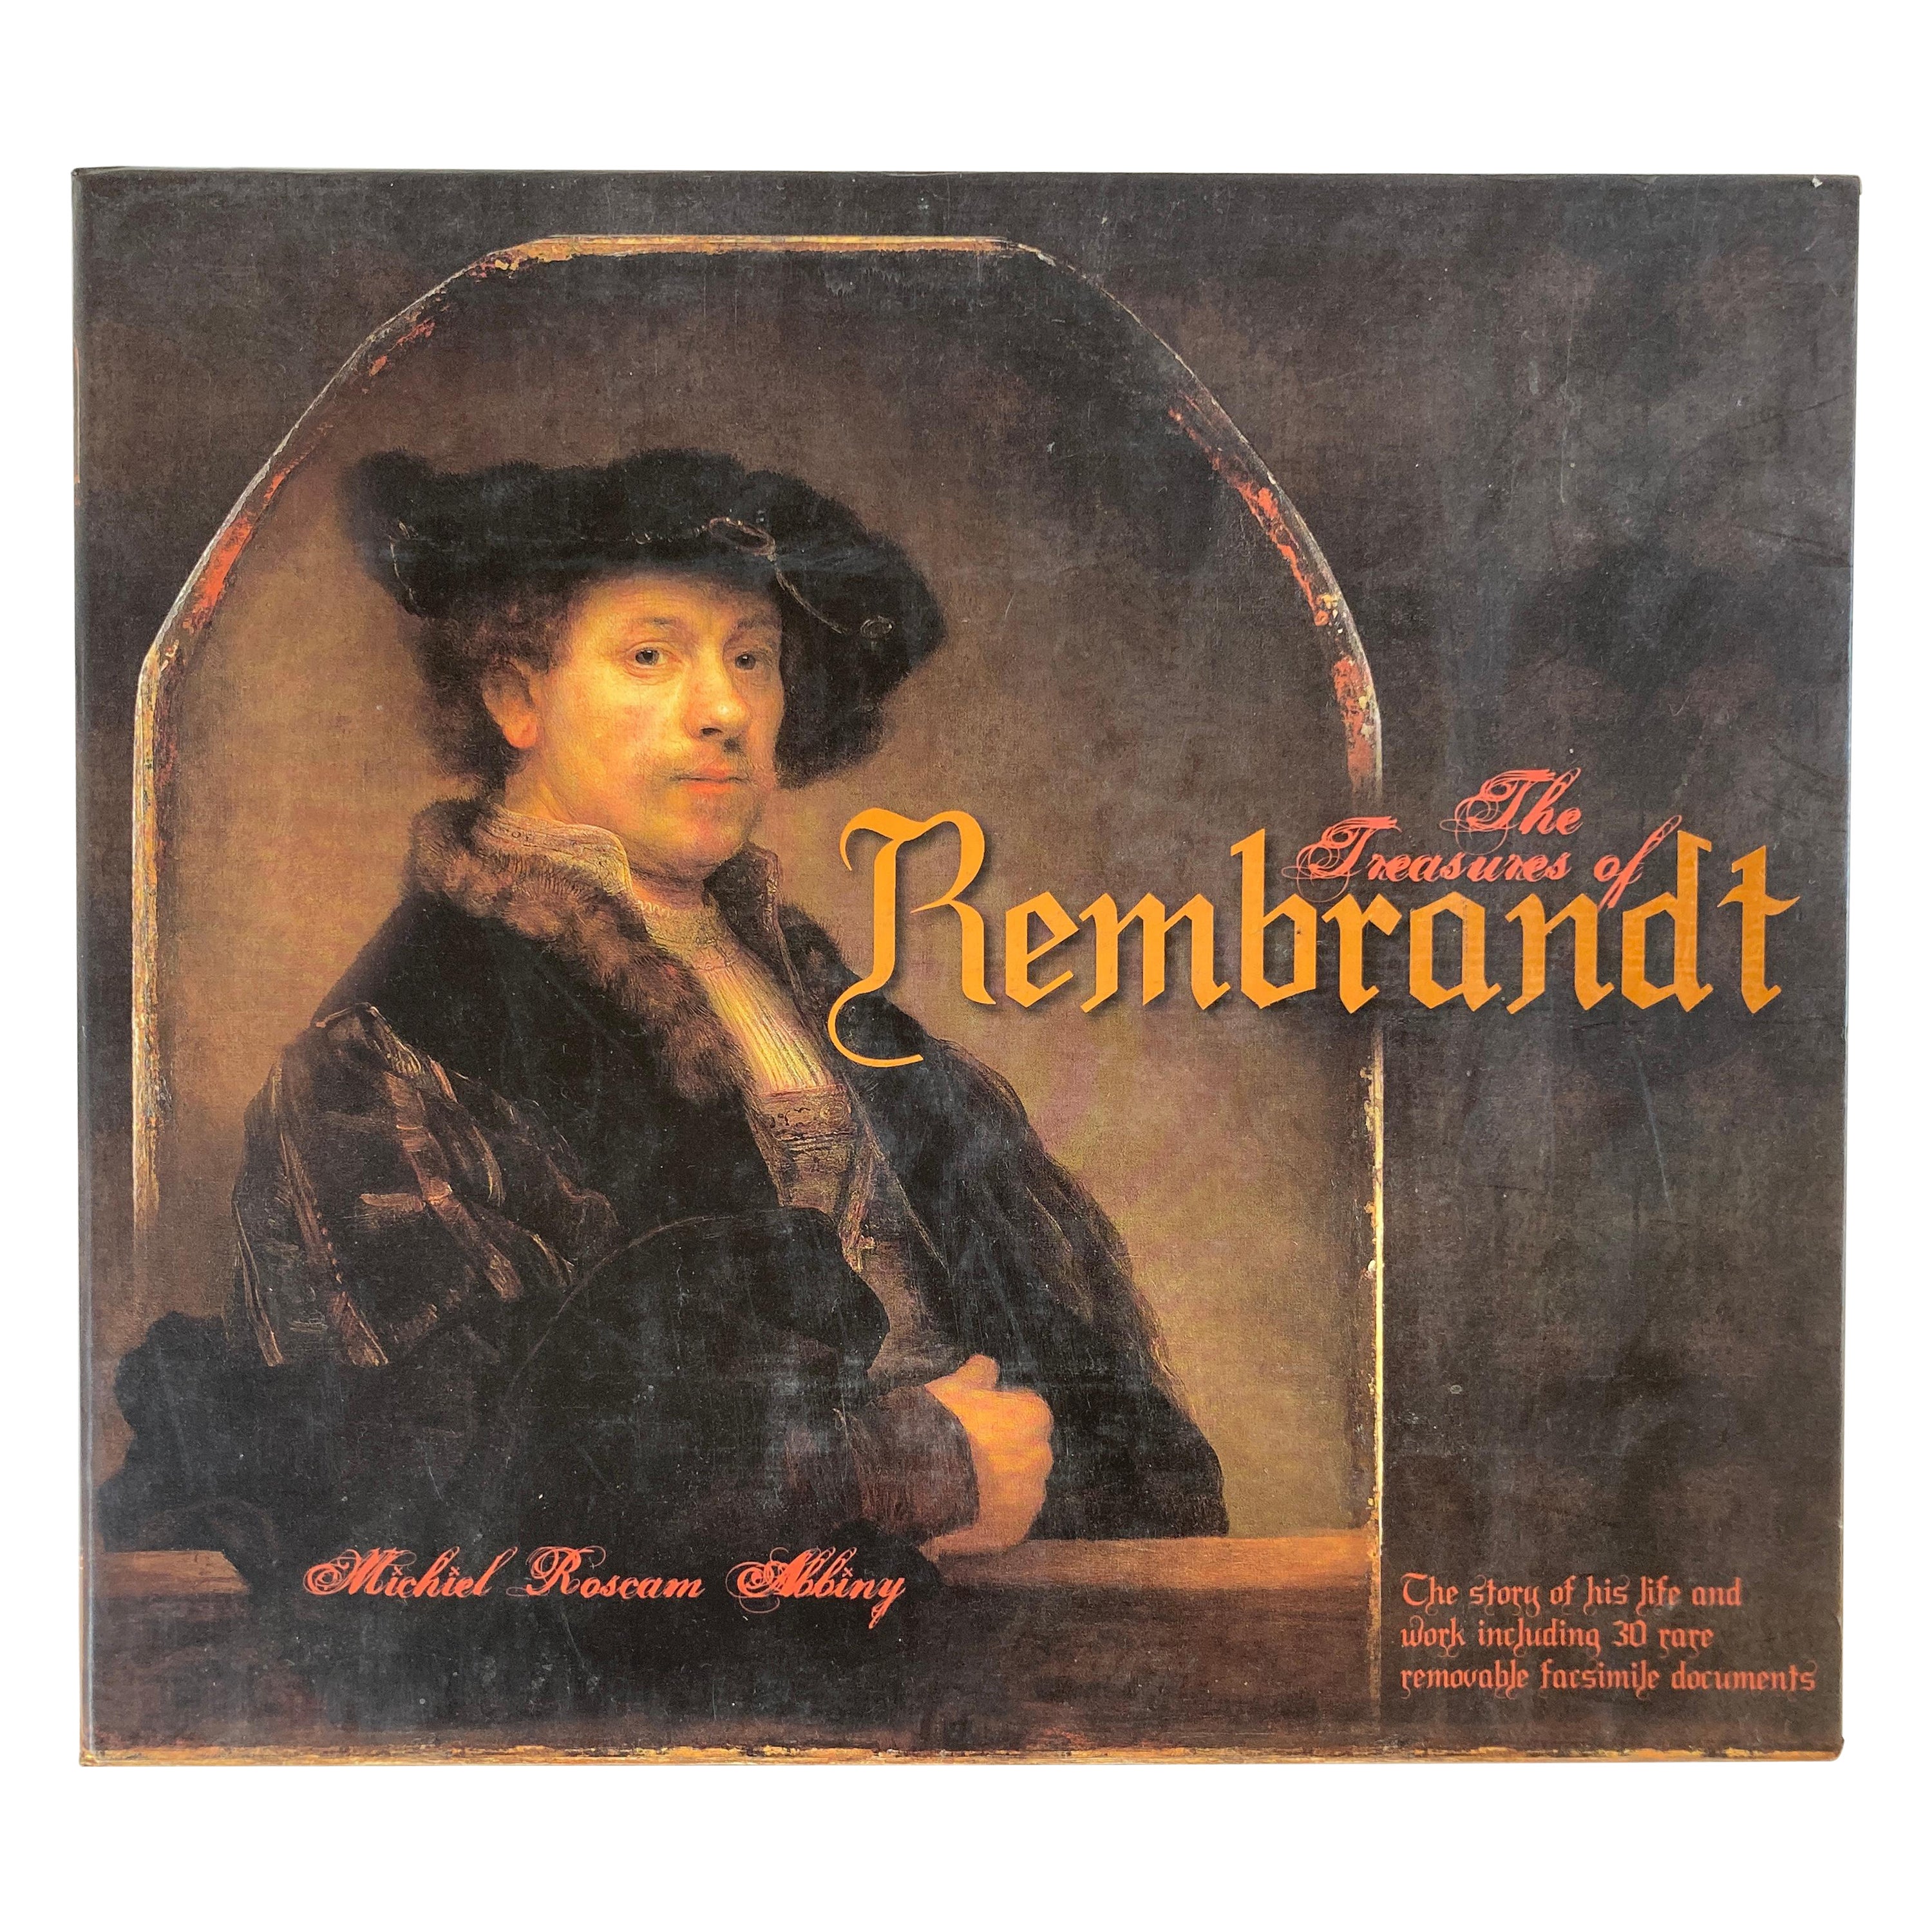 The Treasures of Rembrandt, Buch von Michiel Roscam Abbing, Kunstgalerie, Buch